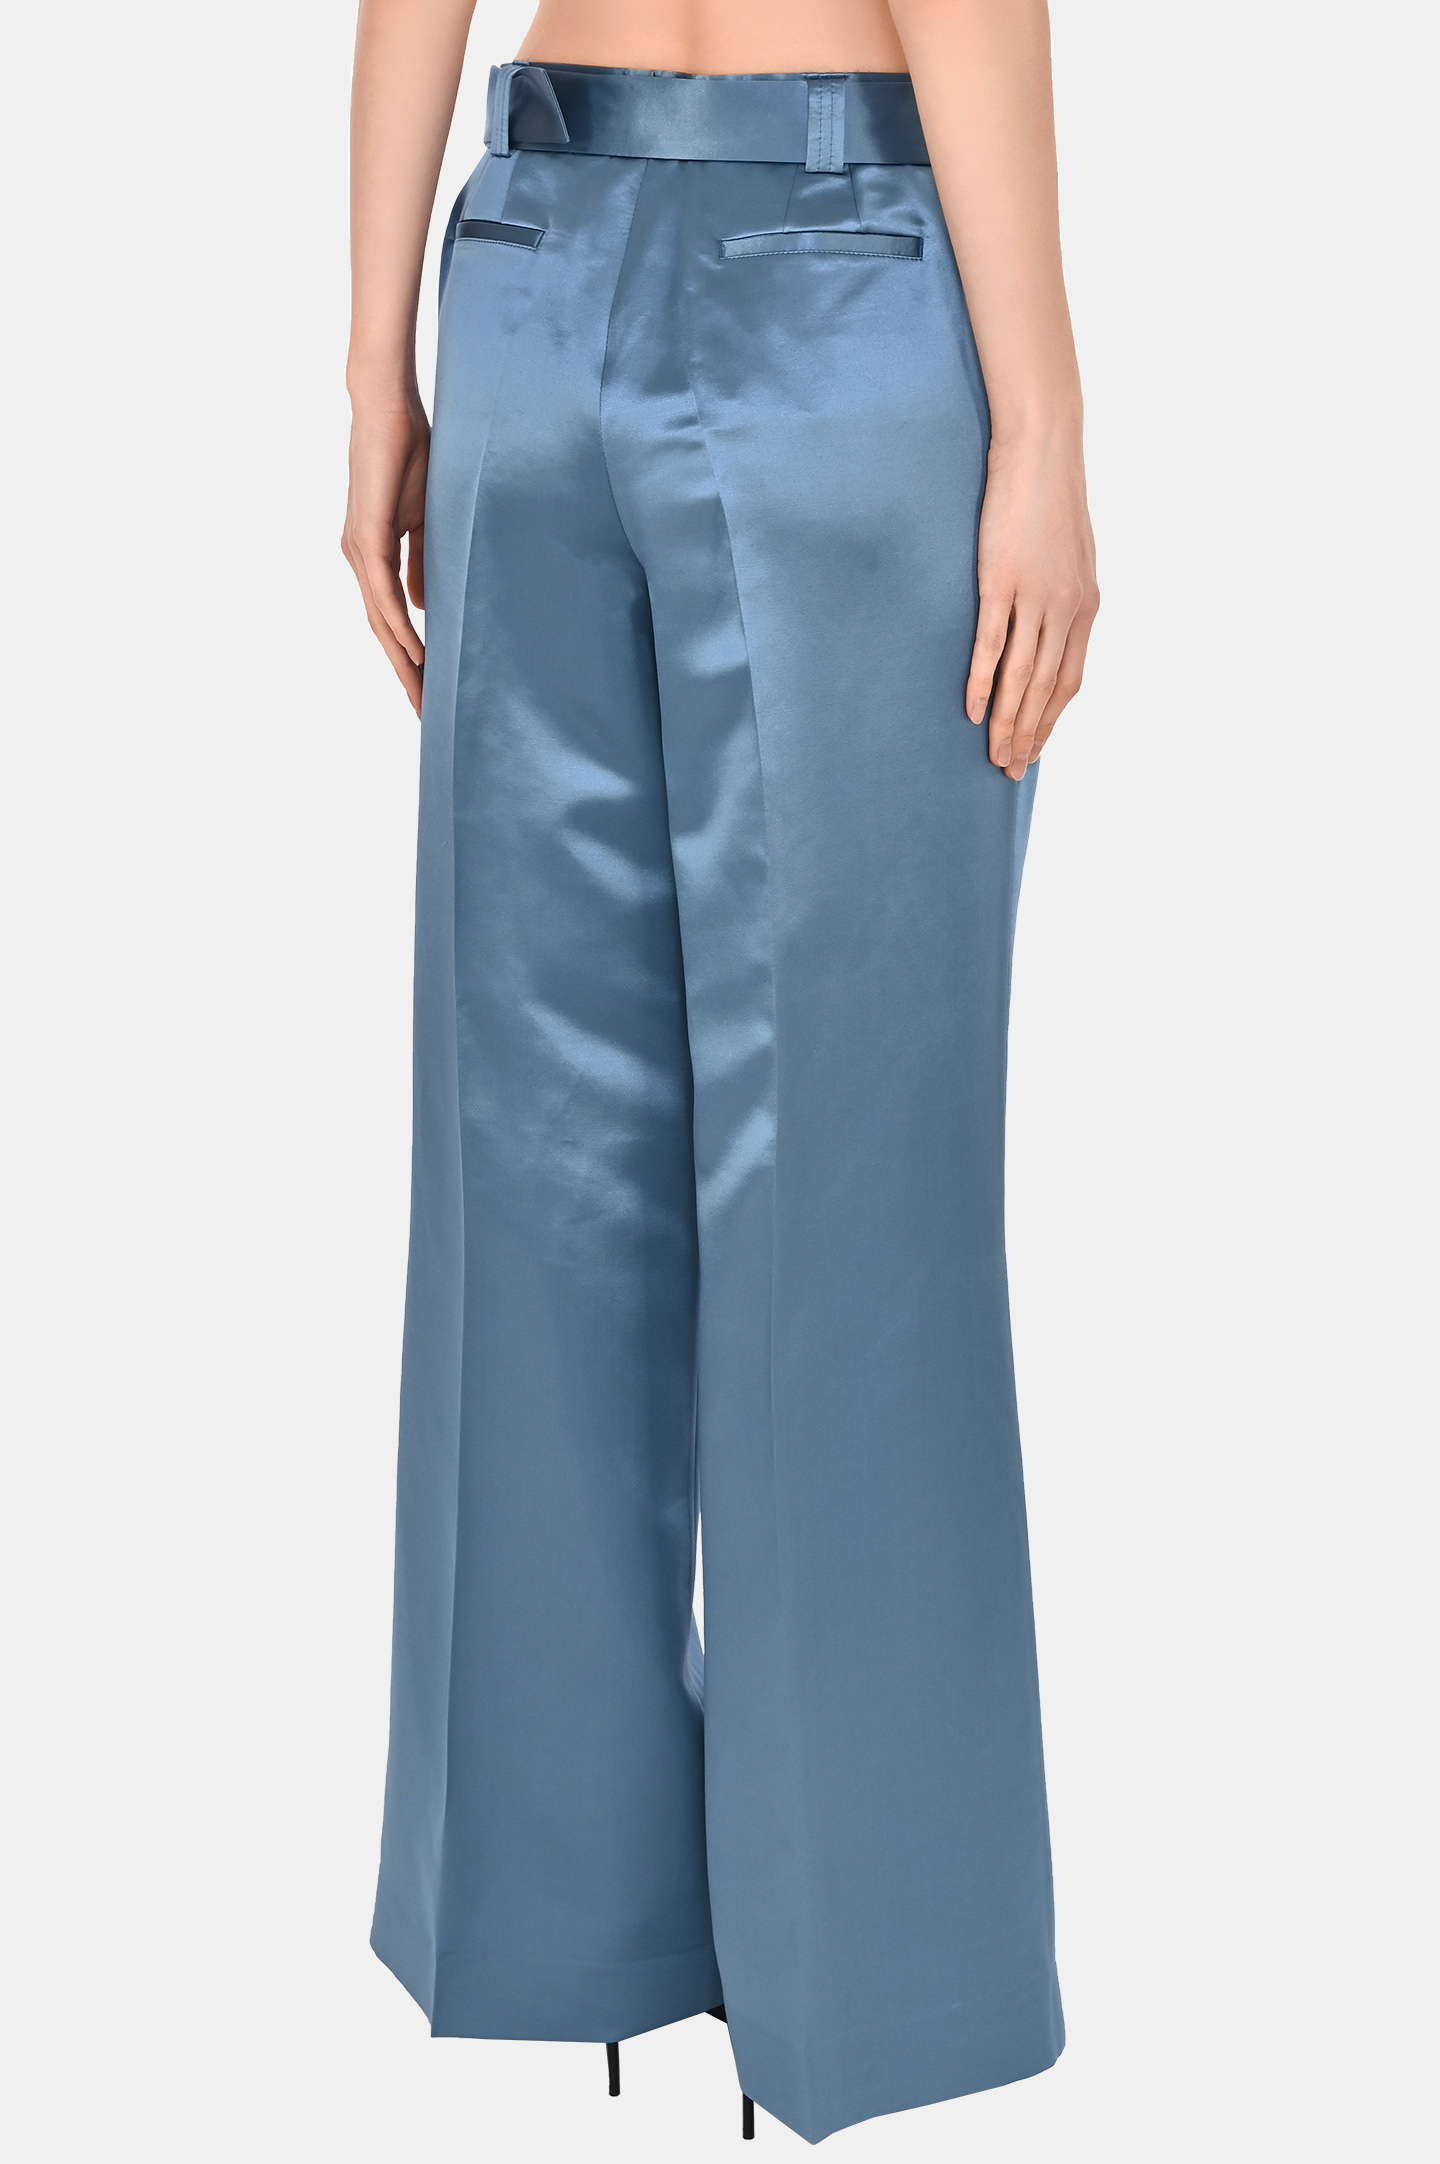 Широкие брюки из шерсти и шелка с ремнем JACOB LEE WWP056SS, цвет: Голубой, Женский